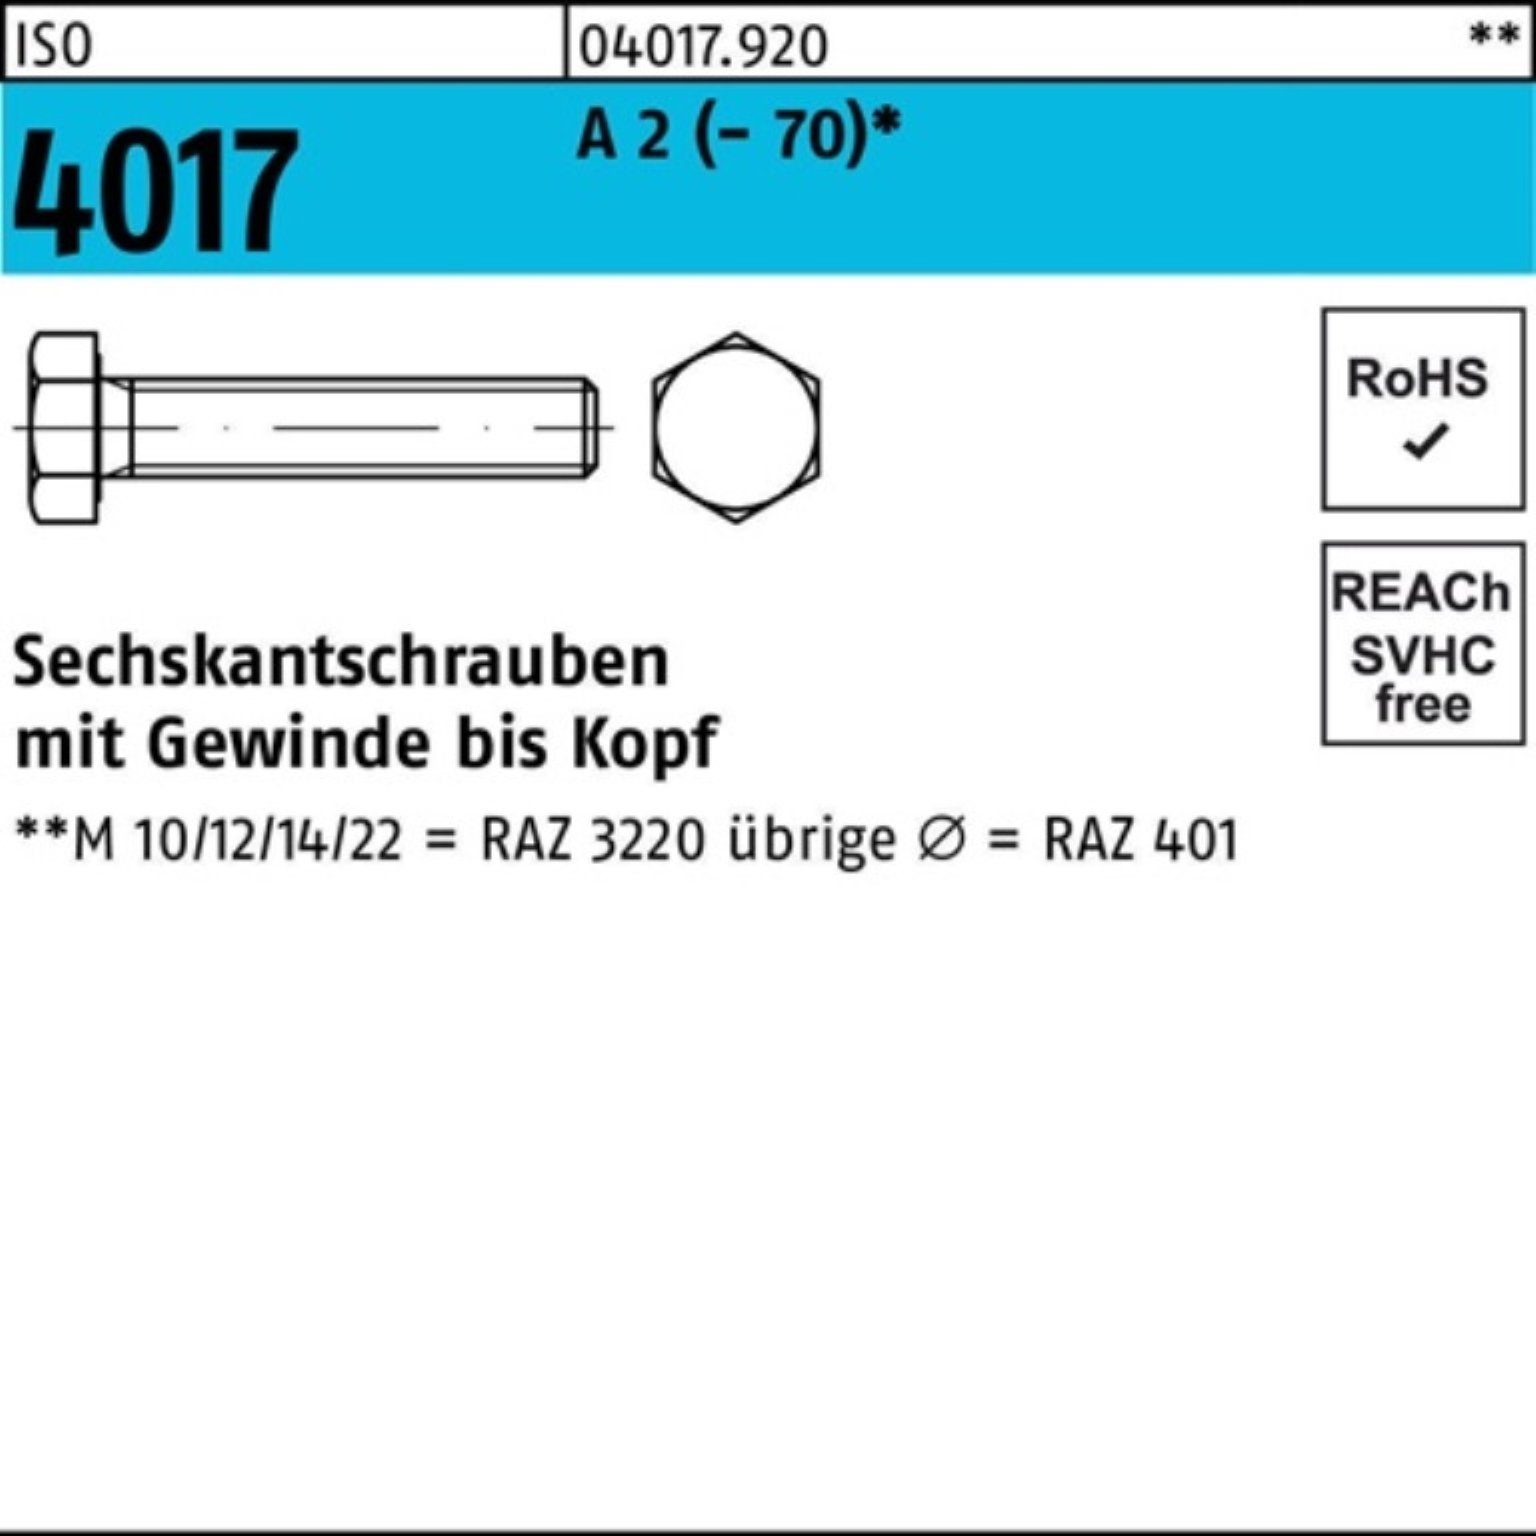 Bufab Sechskantschraube 100er Pack Sechskantschraube Stück VG (70) ISO 2 M12x A 4017 170 1